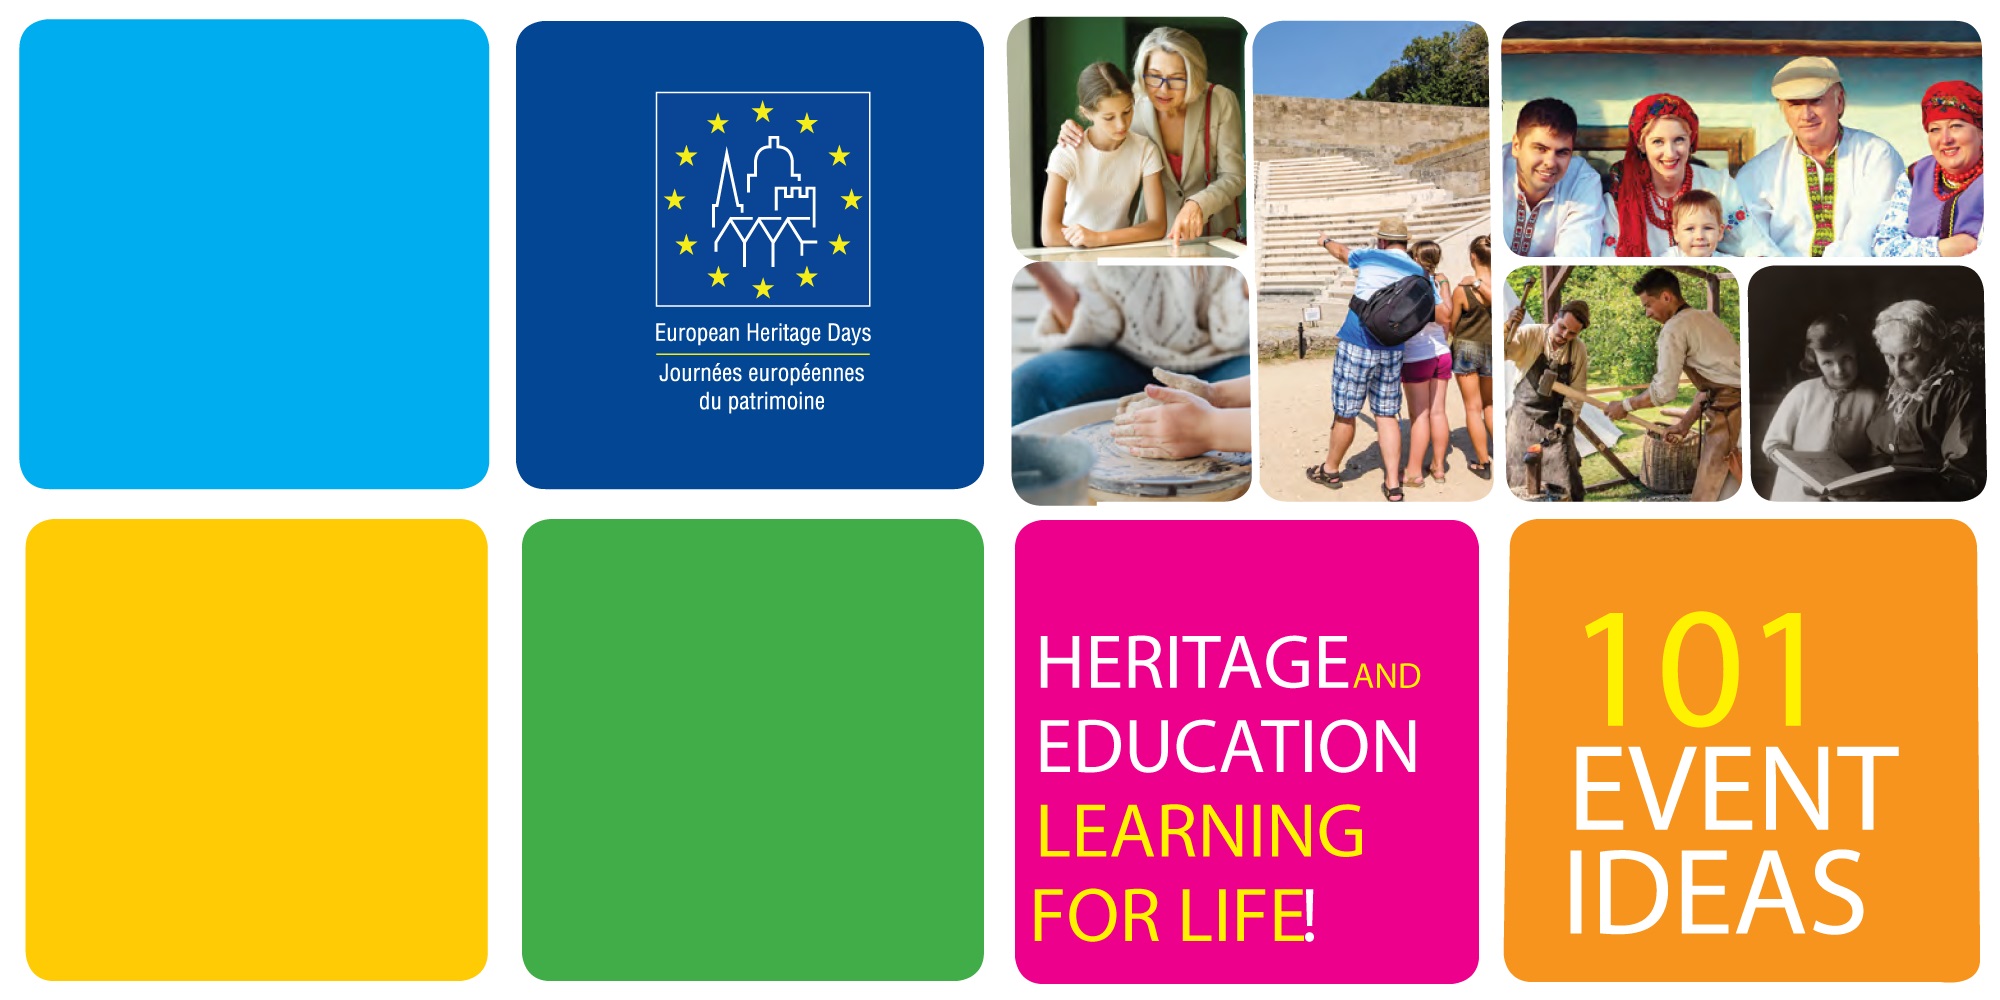 Théme des journées européennes du patrimoine 2020 : patrimoine et éducation - Apprendre pour la vie !